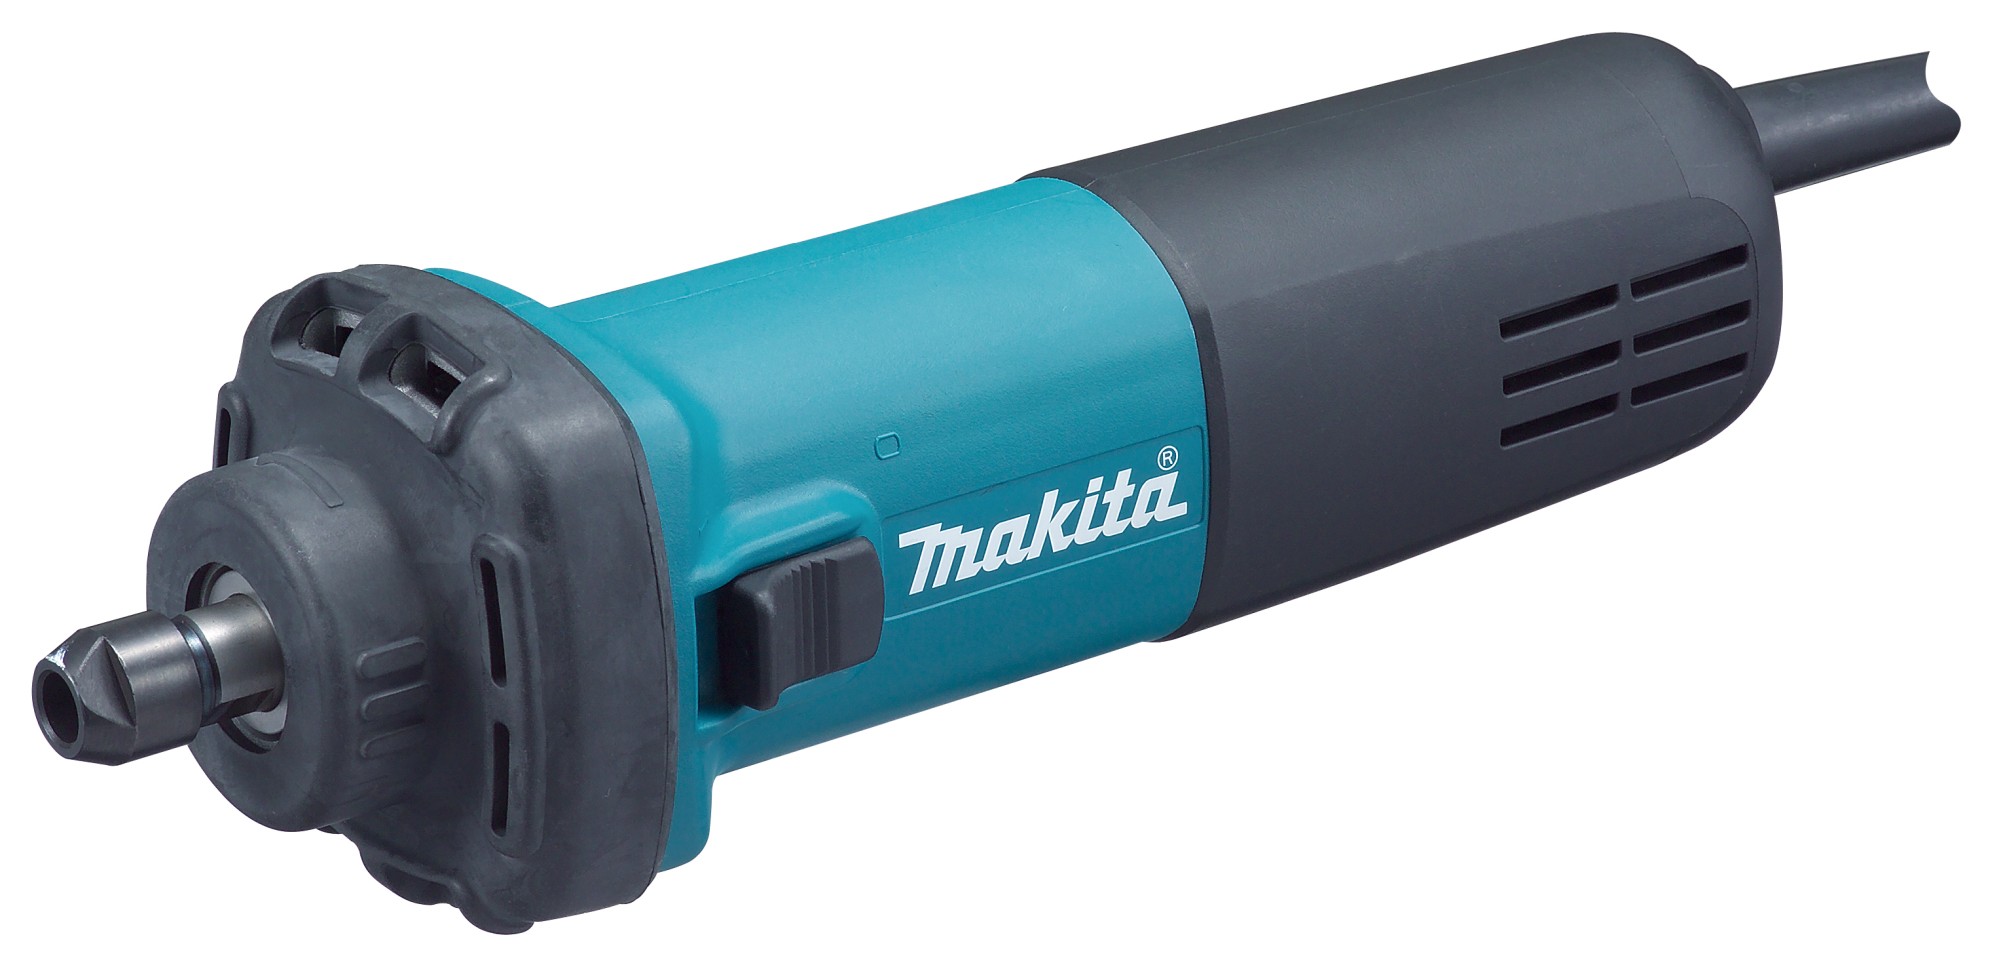 Makita GD0602 Amoladora recta 400W 6mm MAK-GD0602 | AMOLADORAS